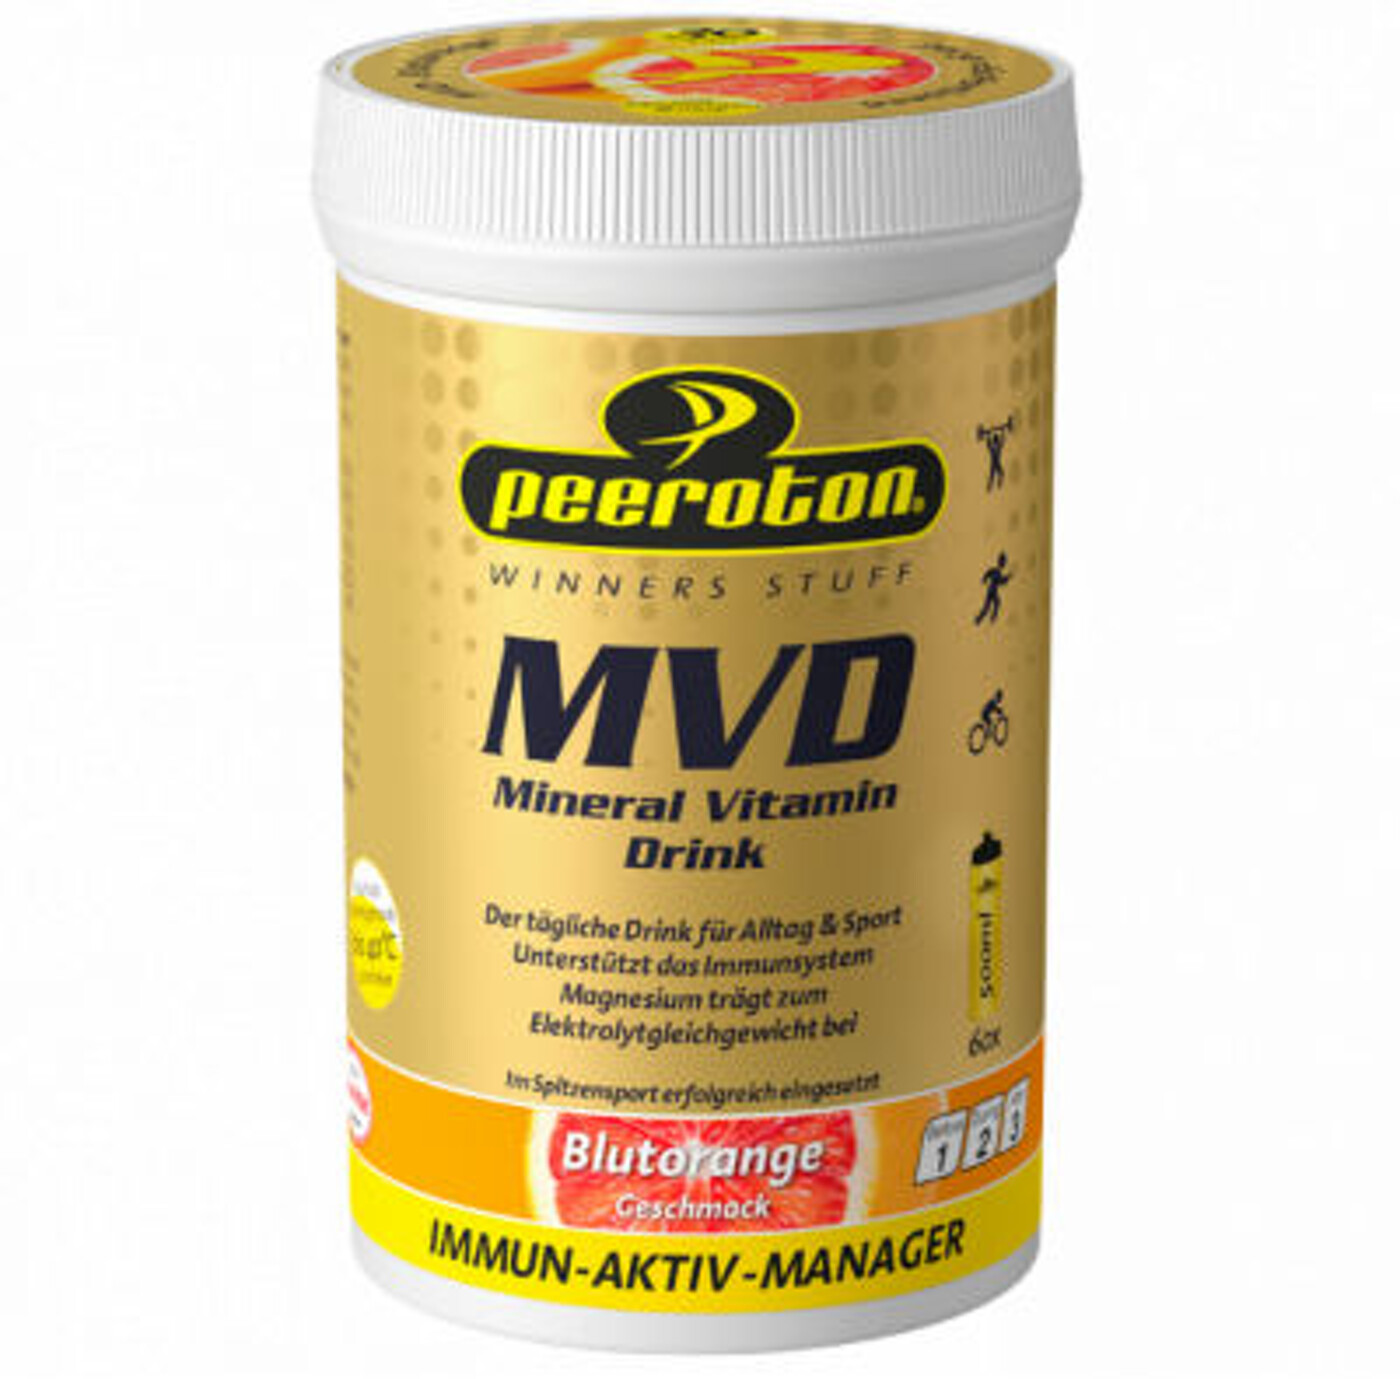 MIneral Vitamin DRINK 300g Blutorange PEEROTON